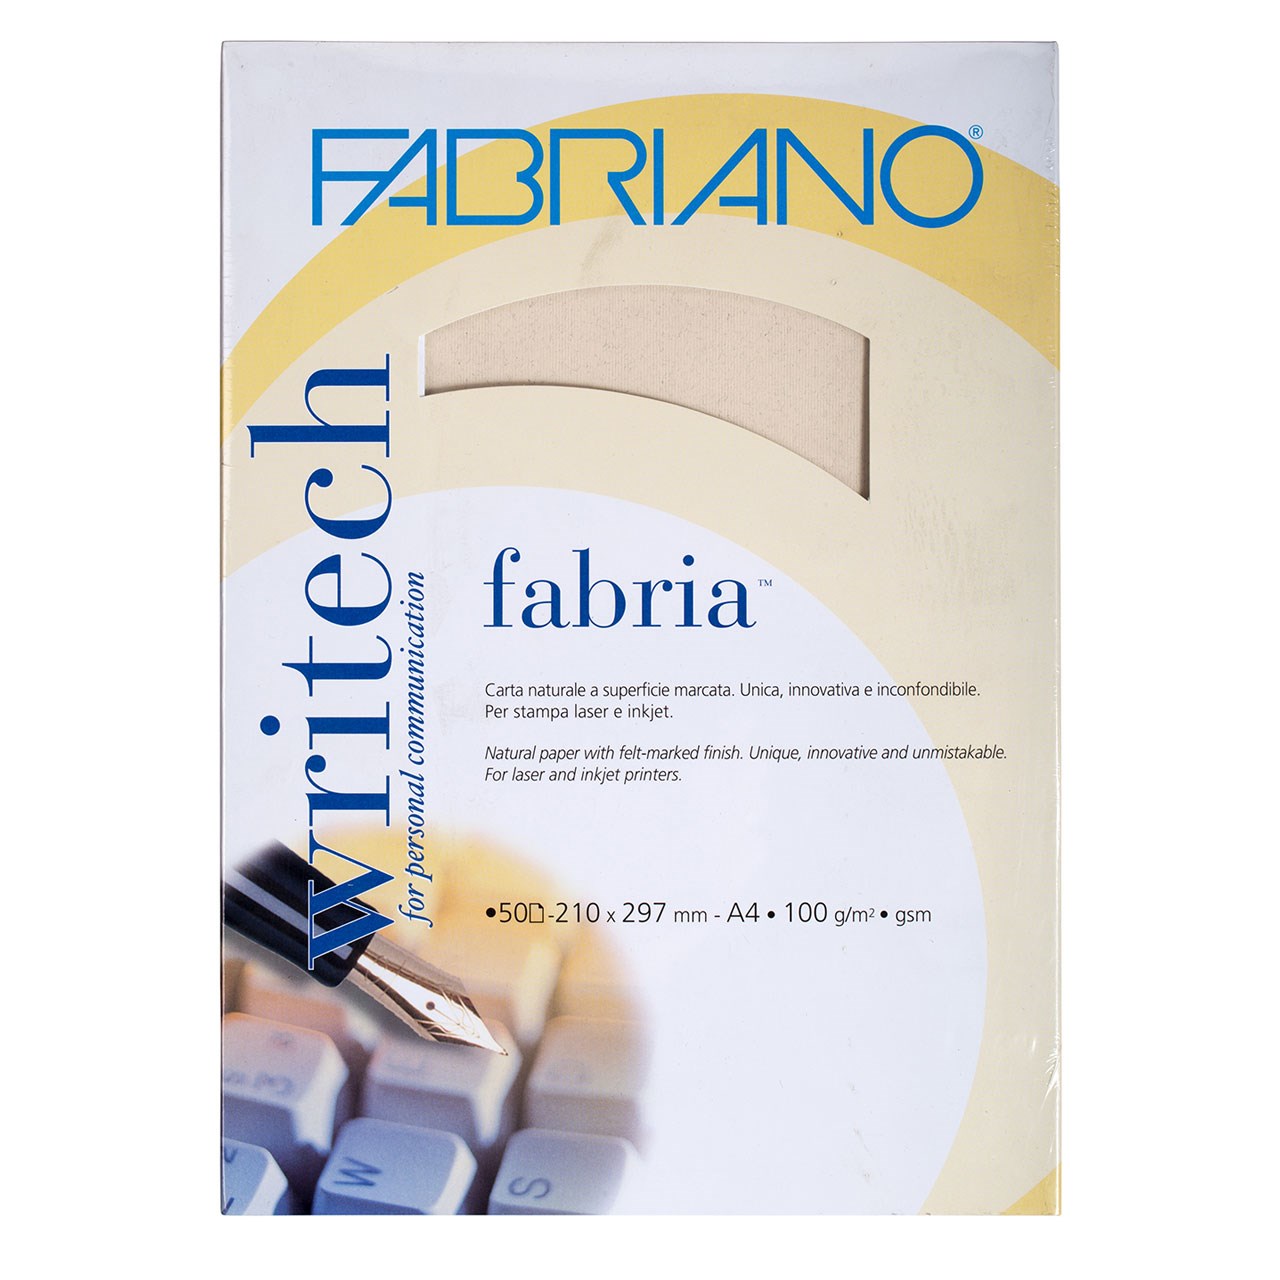 نقد و بررسی کاغذ فابریانو مدل Fabriano Briazzato سایز A4 بسته 50 عددی توسط خریداران